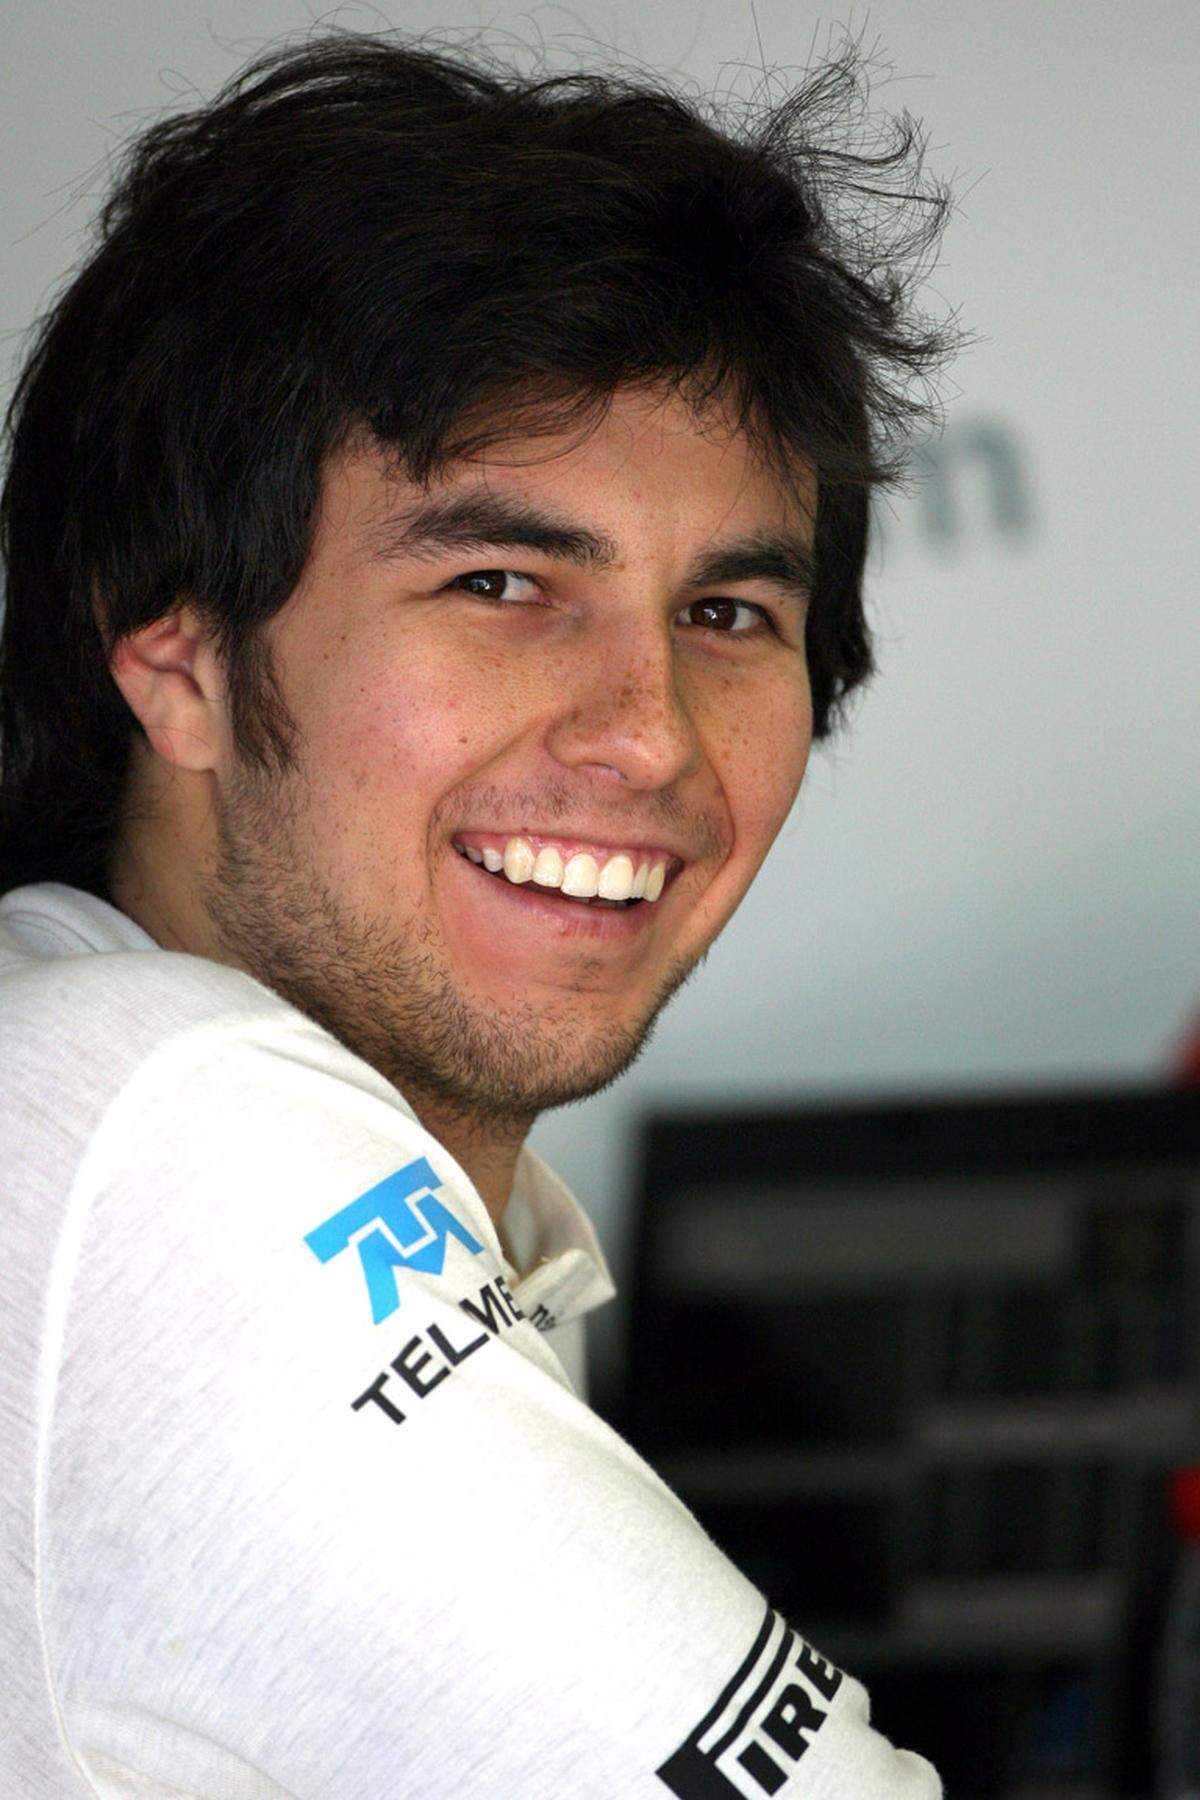 Sergio Perez (MEX)  Geboren: 26. Januar 1990 in Guadalajara  Formel-1-Debütant  Größter Erfolg: Meister der Klasse B in der britischen Formel 3 2007